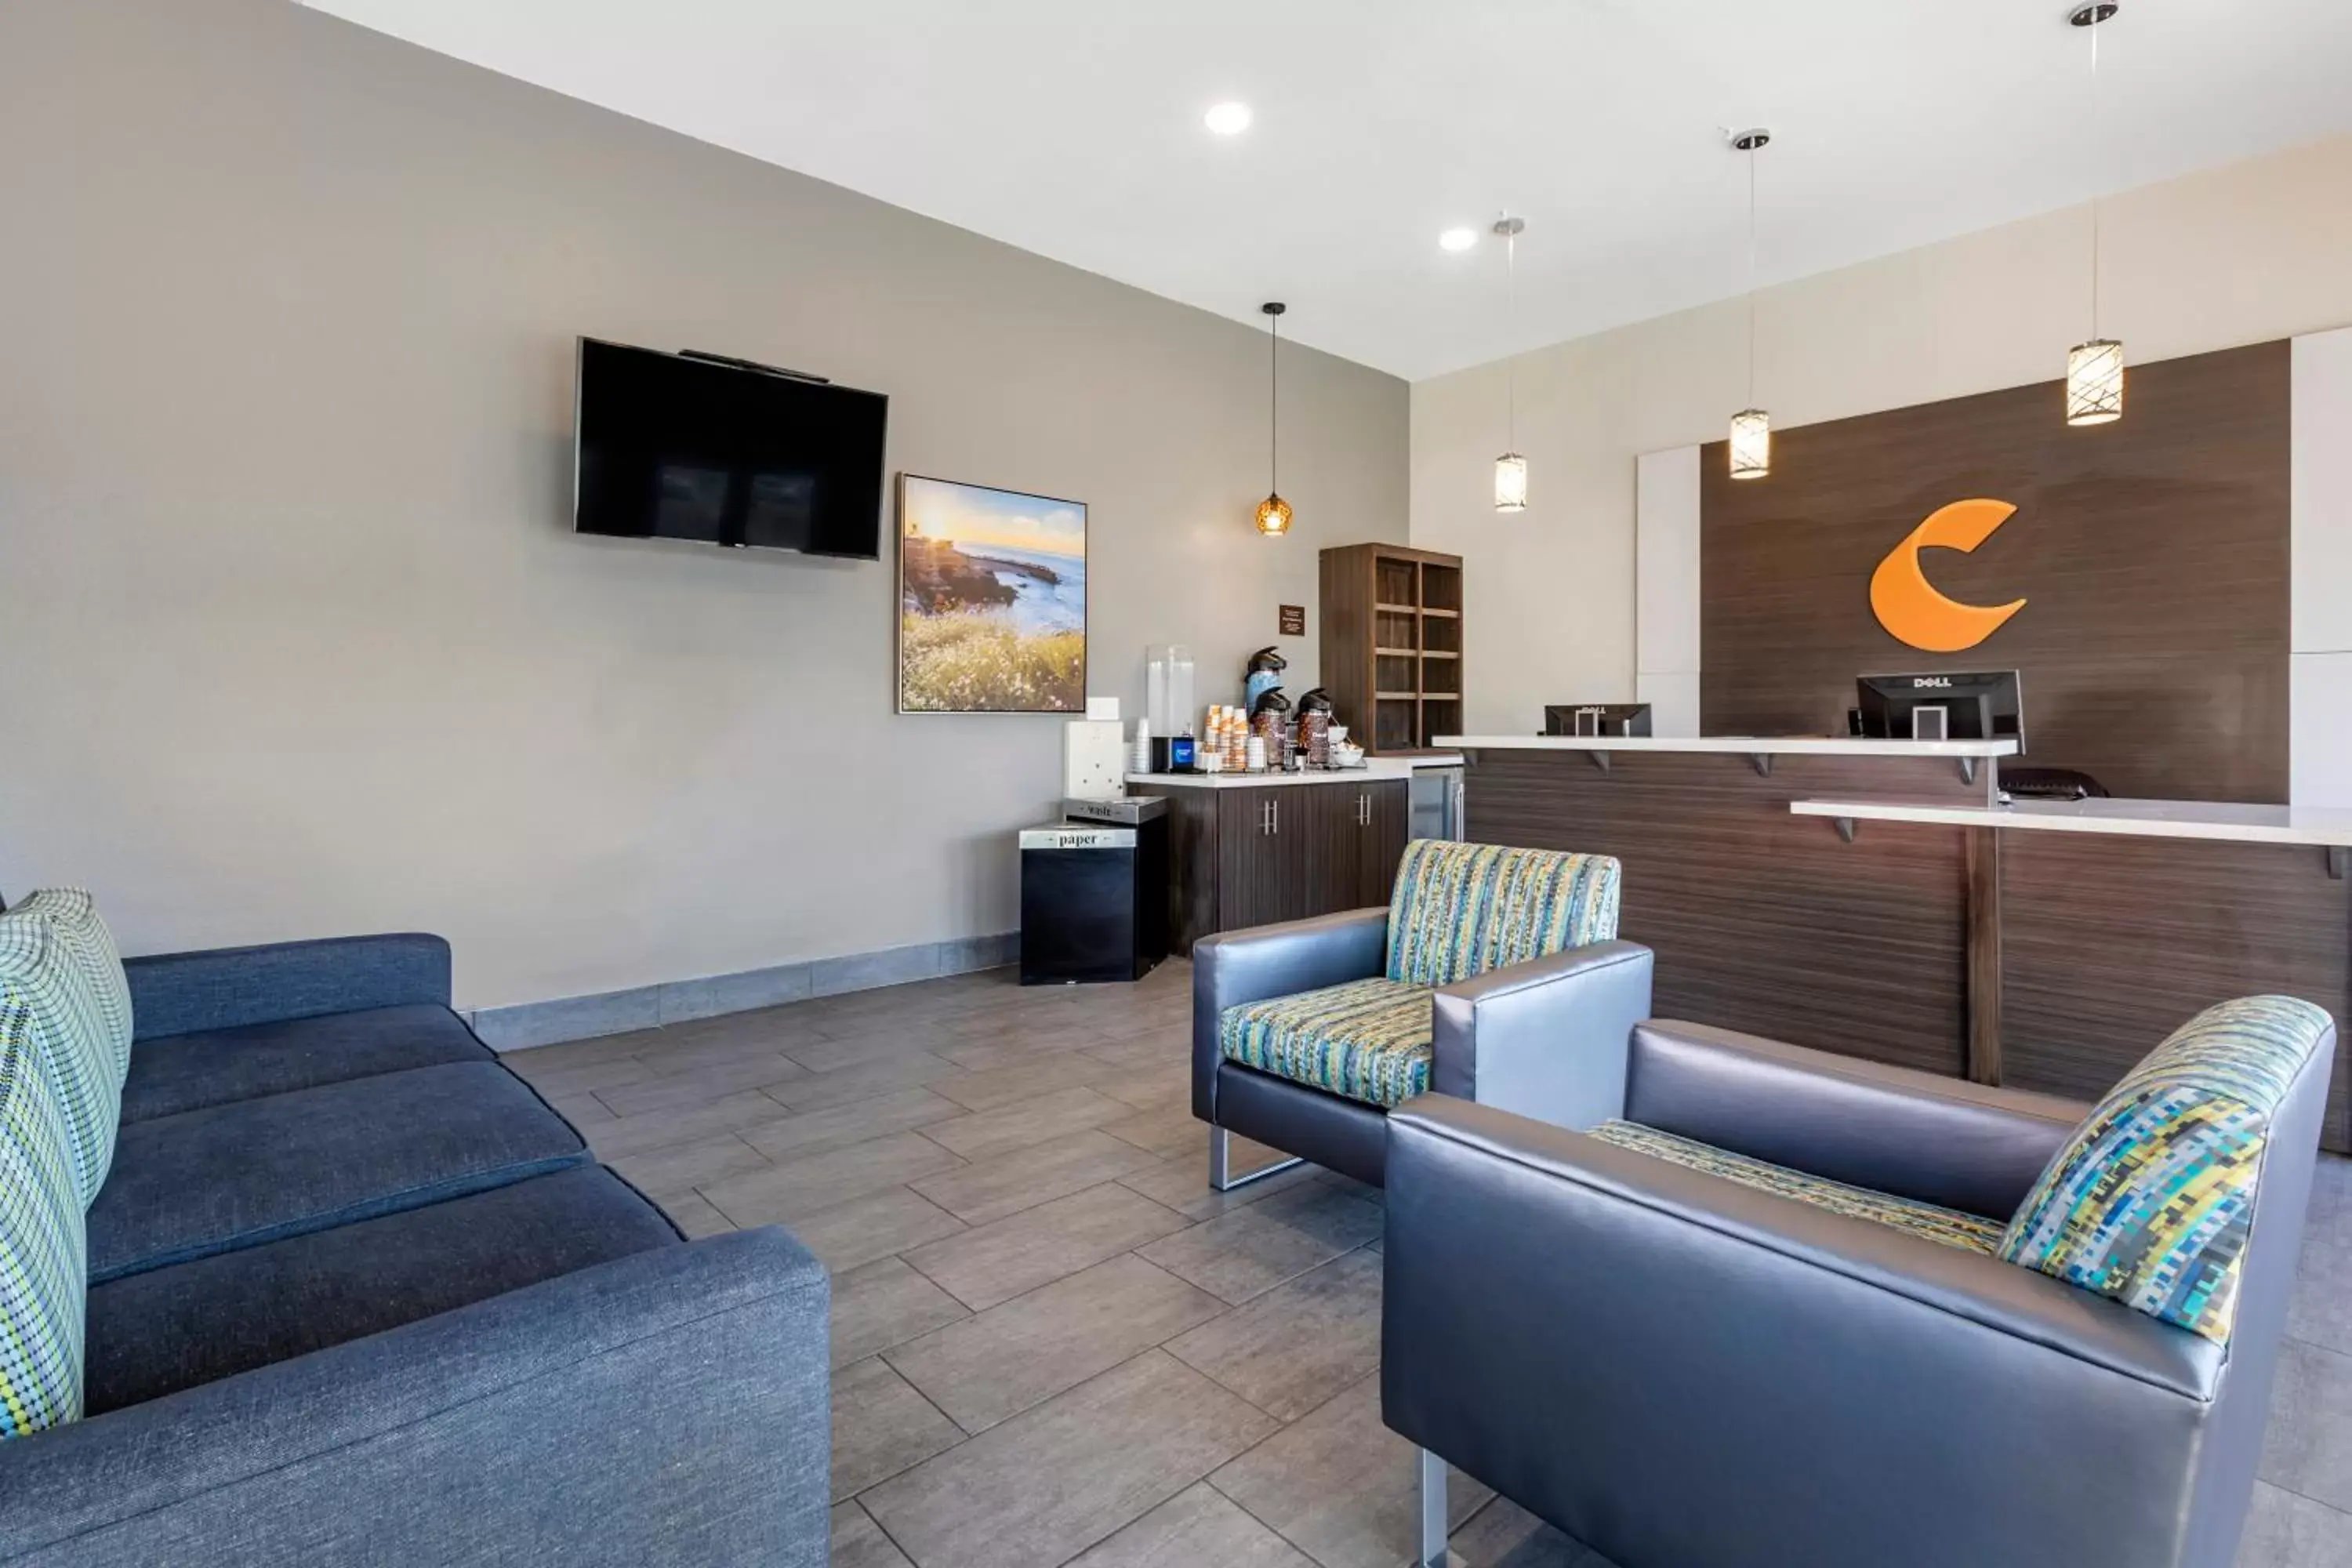 Lobby or reception, Lobby/Reception in Comfort Inn San Diego Miramar